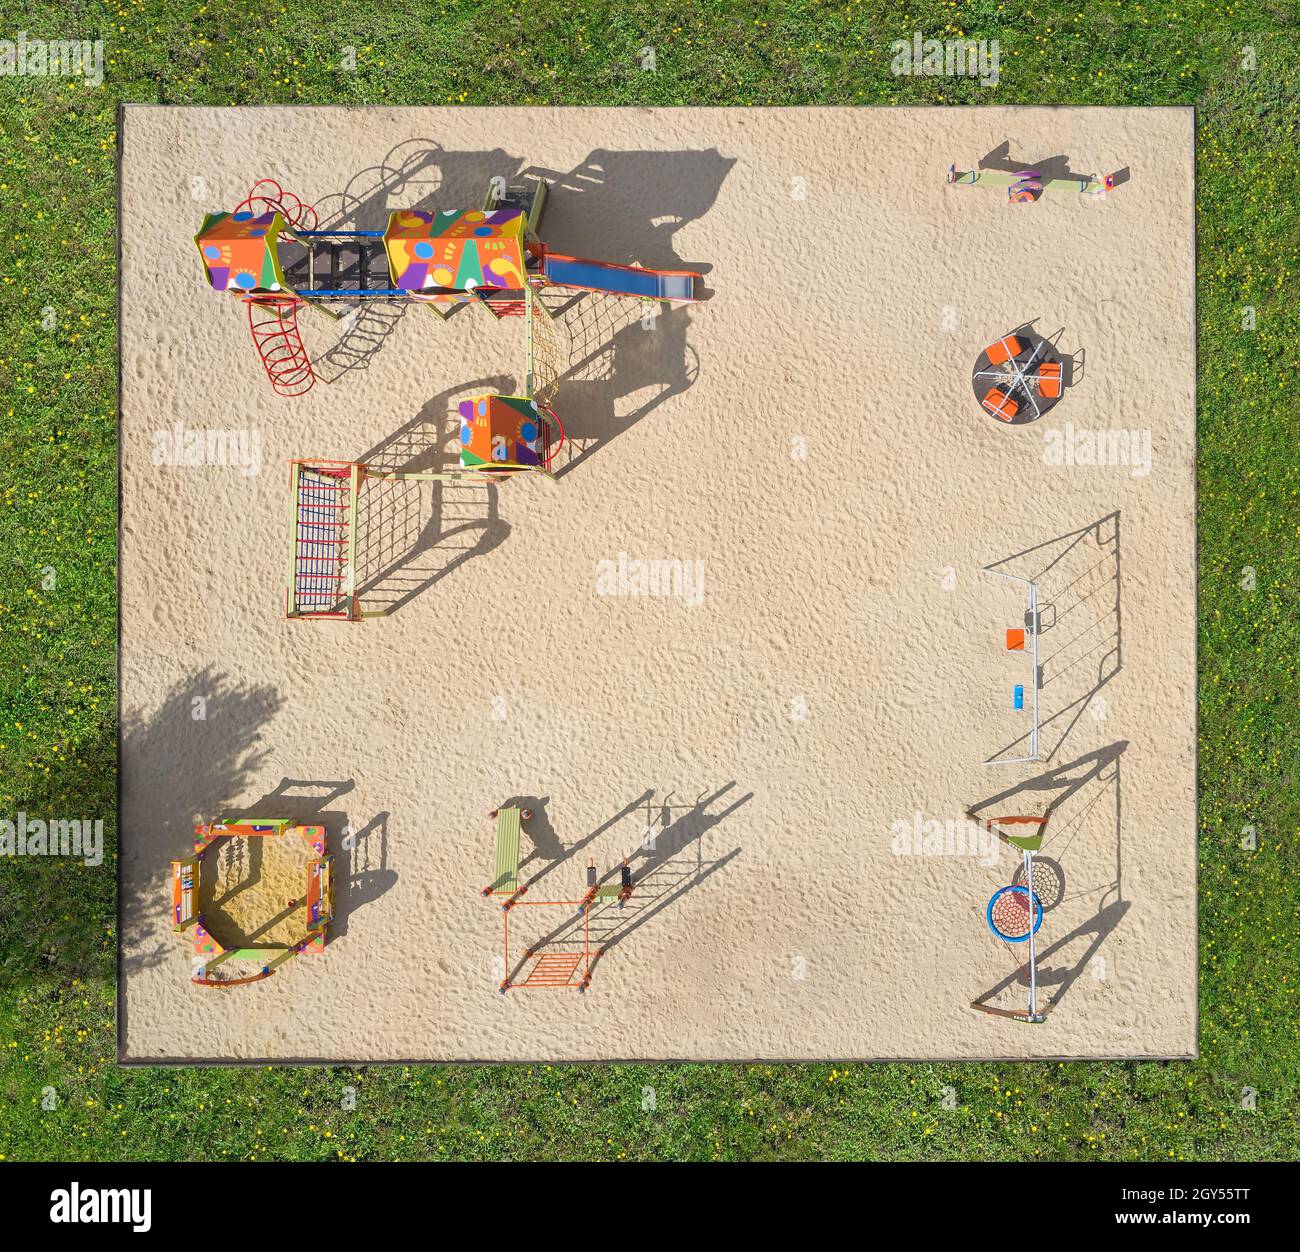 Moderno parco giochi con sabbia, scivolo e altalena per bambini, vista aerea Foto Stock